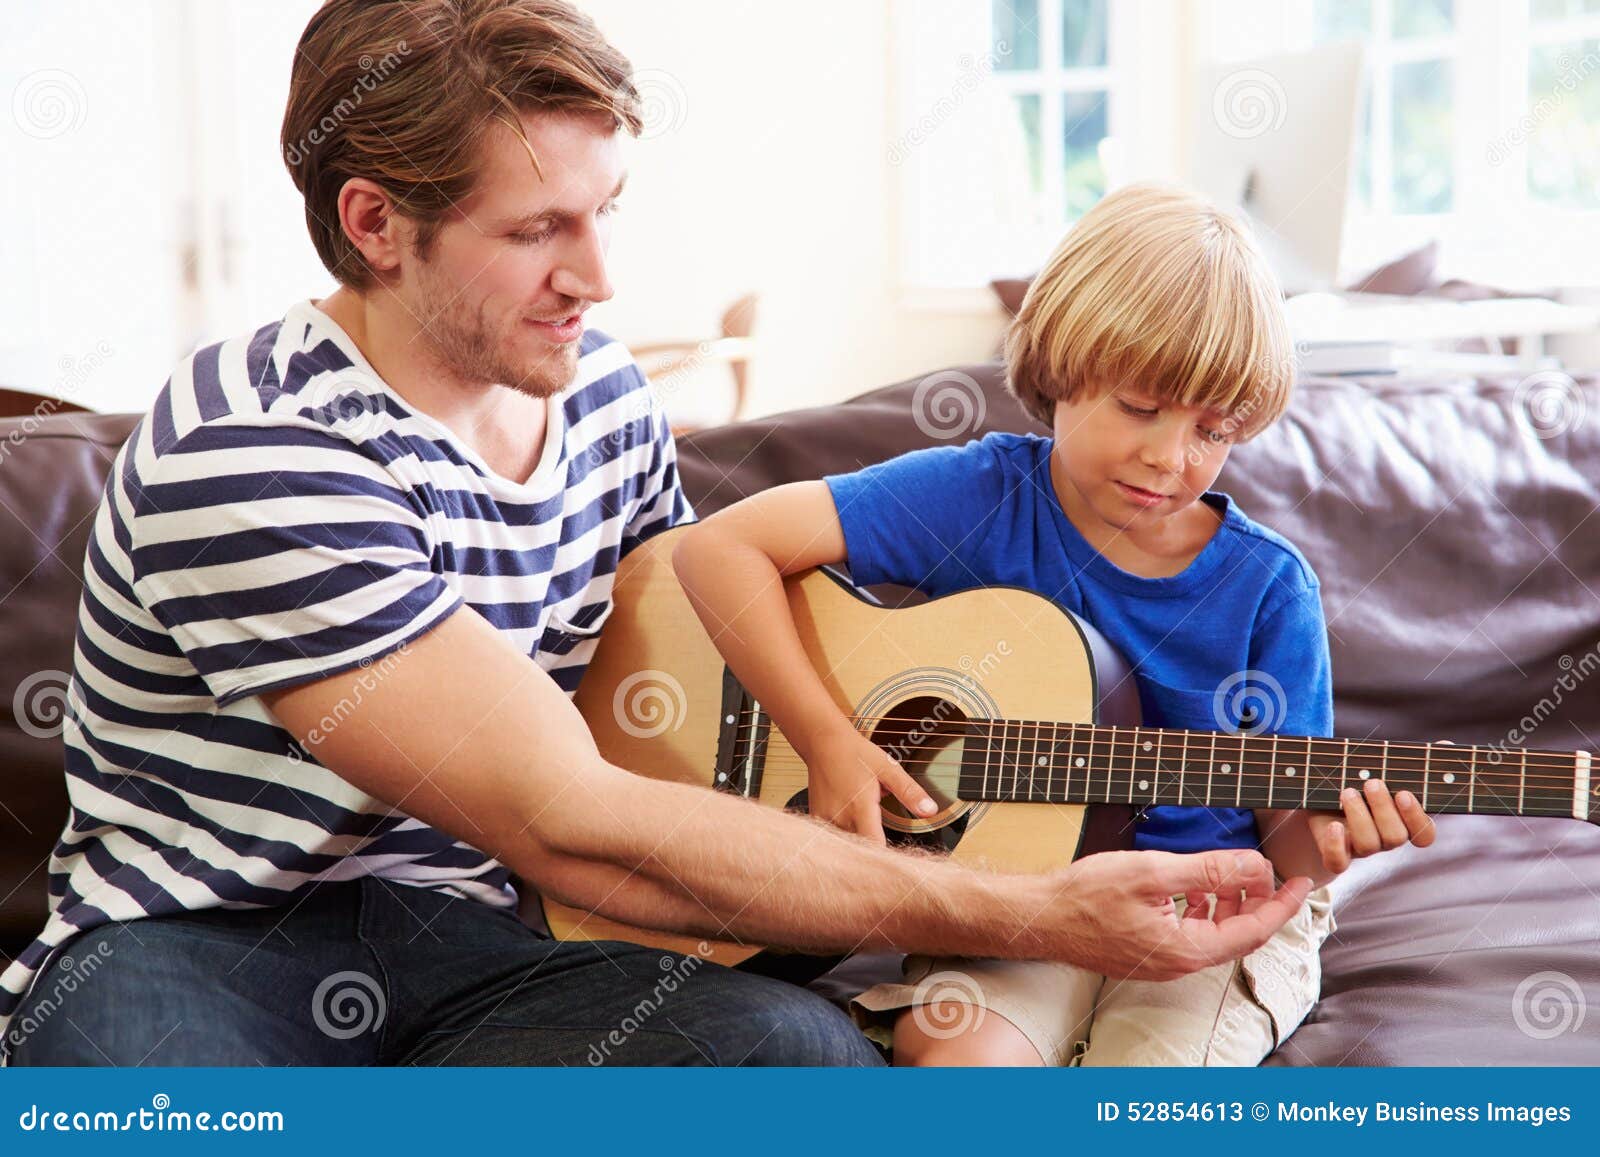 Отец и сын музыка. Ребенок с папой с гитарой. Отец с гитарой. Папа играет на гитаре. Папа с гитарой в кругу семьи.